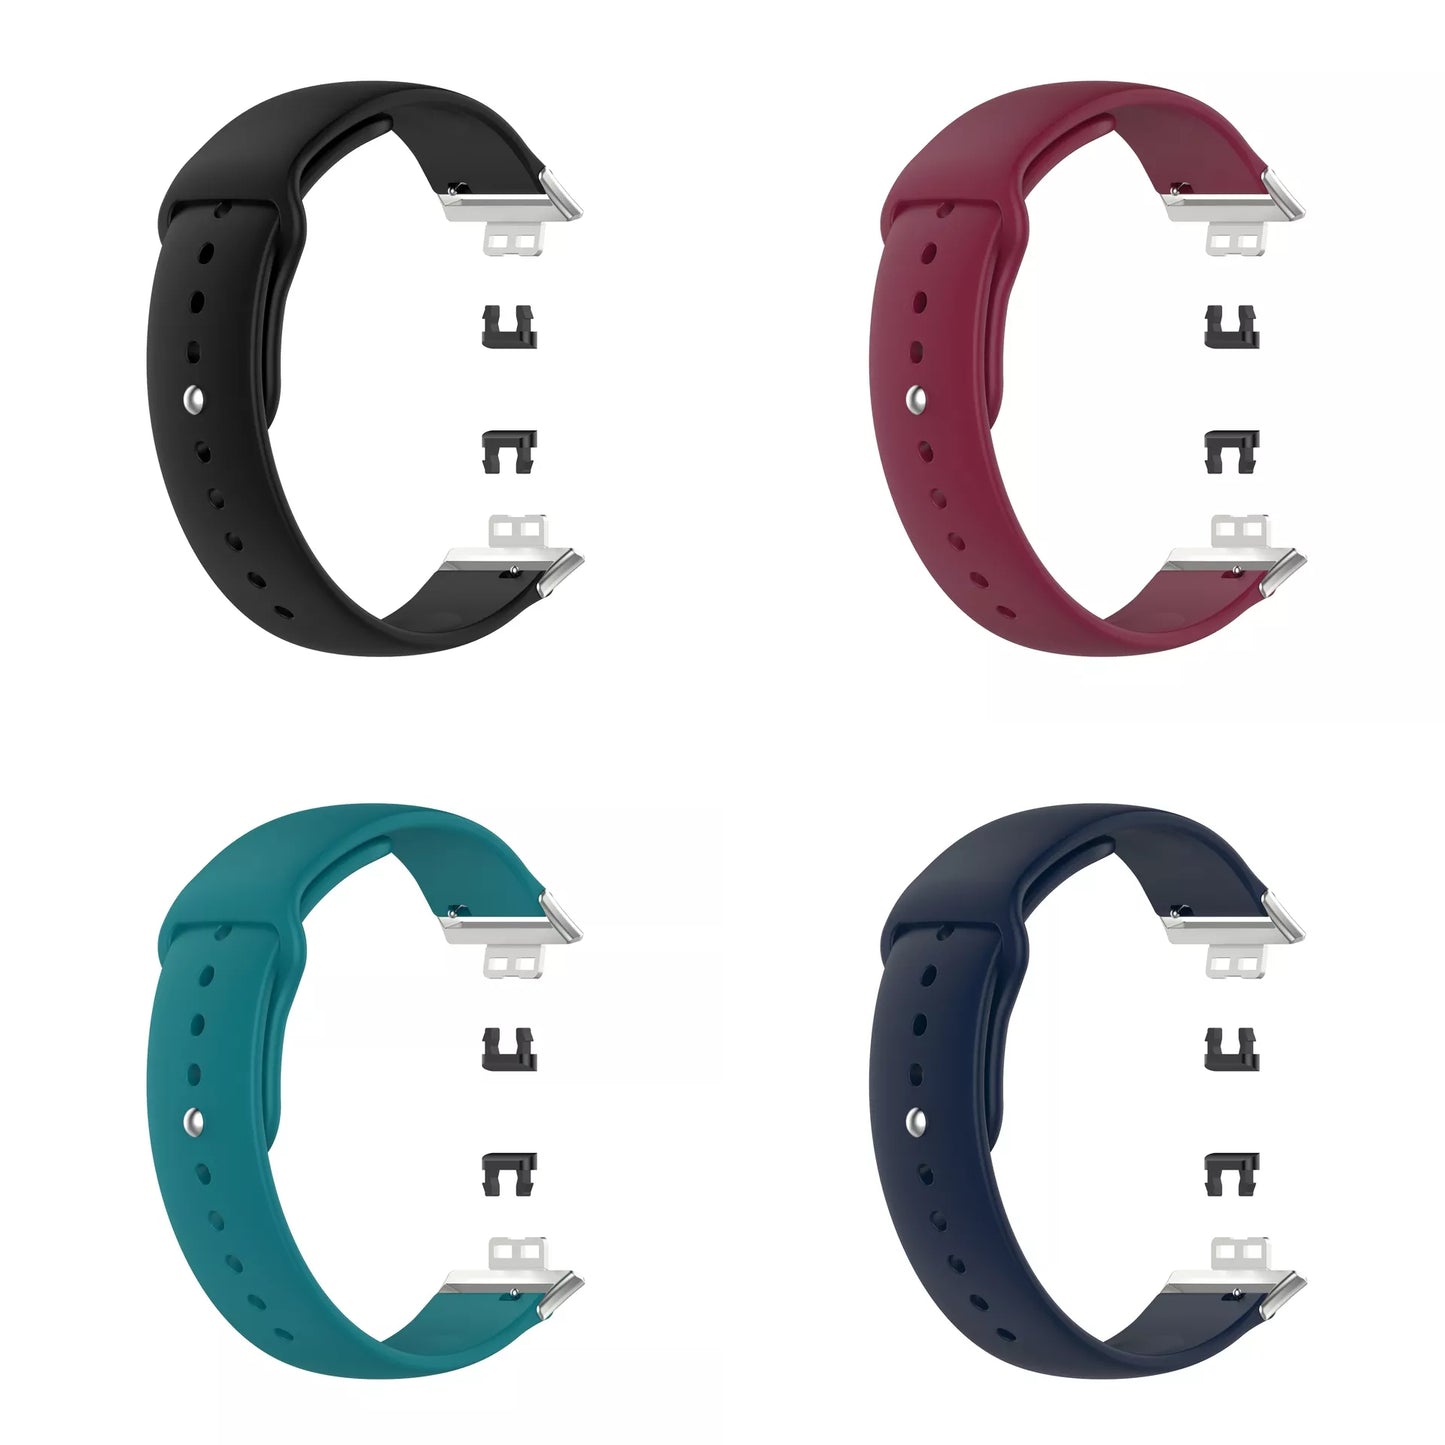 [Liquidación] Repuesto de Brazalete para Reloj / Smartwatch Huawei Watch Fit | 4 Colores | CCE-COR-32